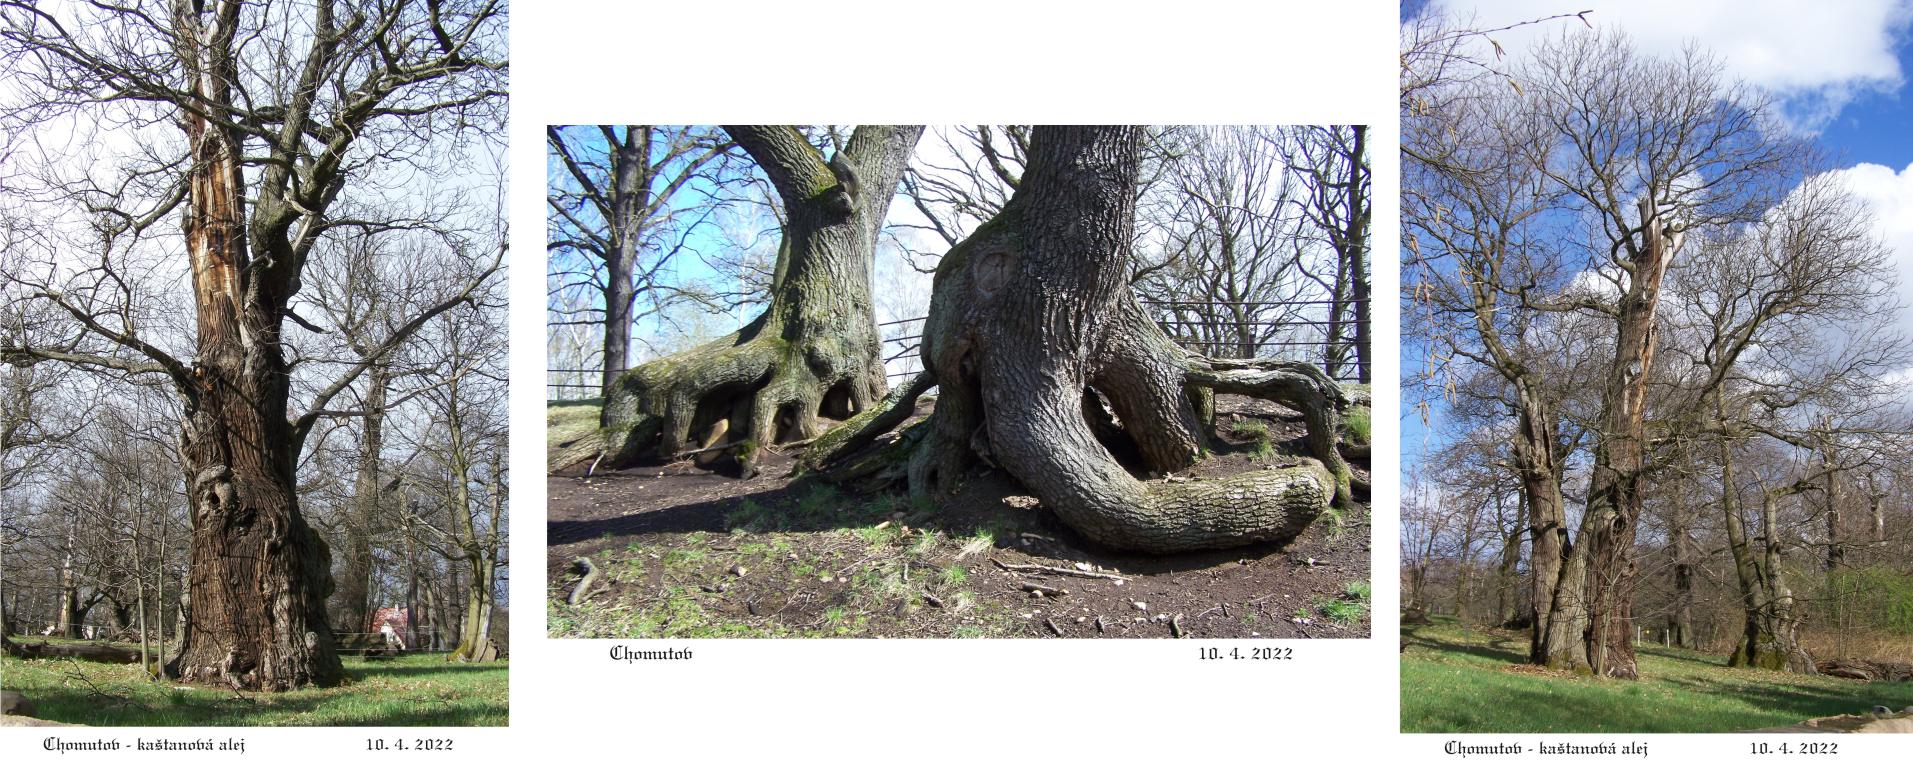 Staré stromy symbolizují dlouhověkost a odolnost.